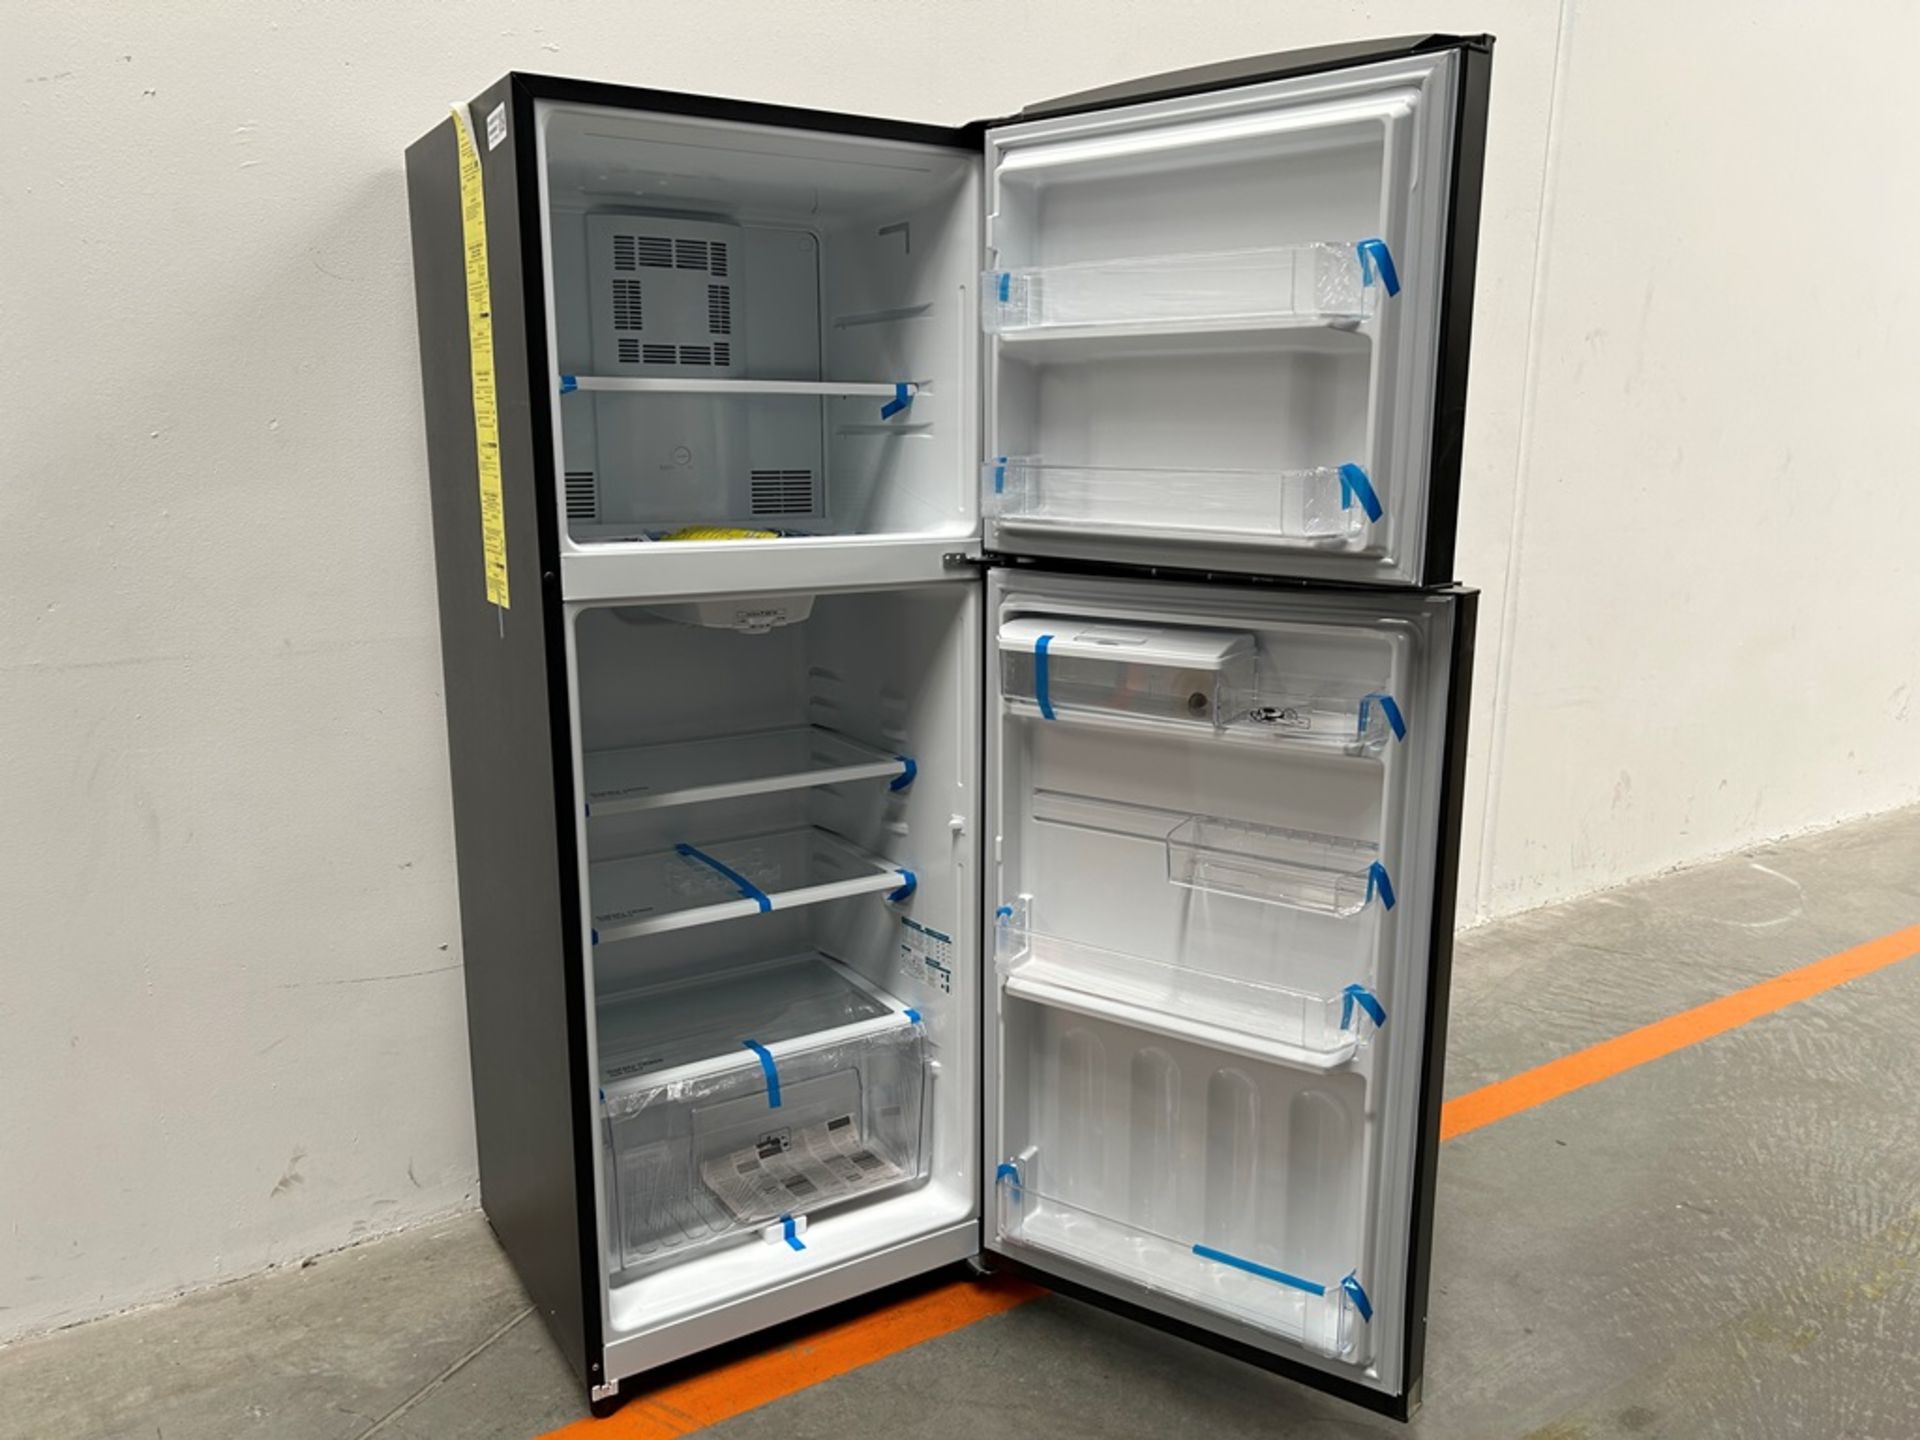 Lote de 2 refrigeradores contiene: 1 refrigerador con dispensador de agua Marca MABE, Modelo RME360 - Image 4 of 19